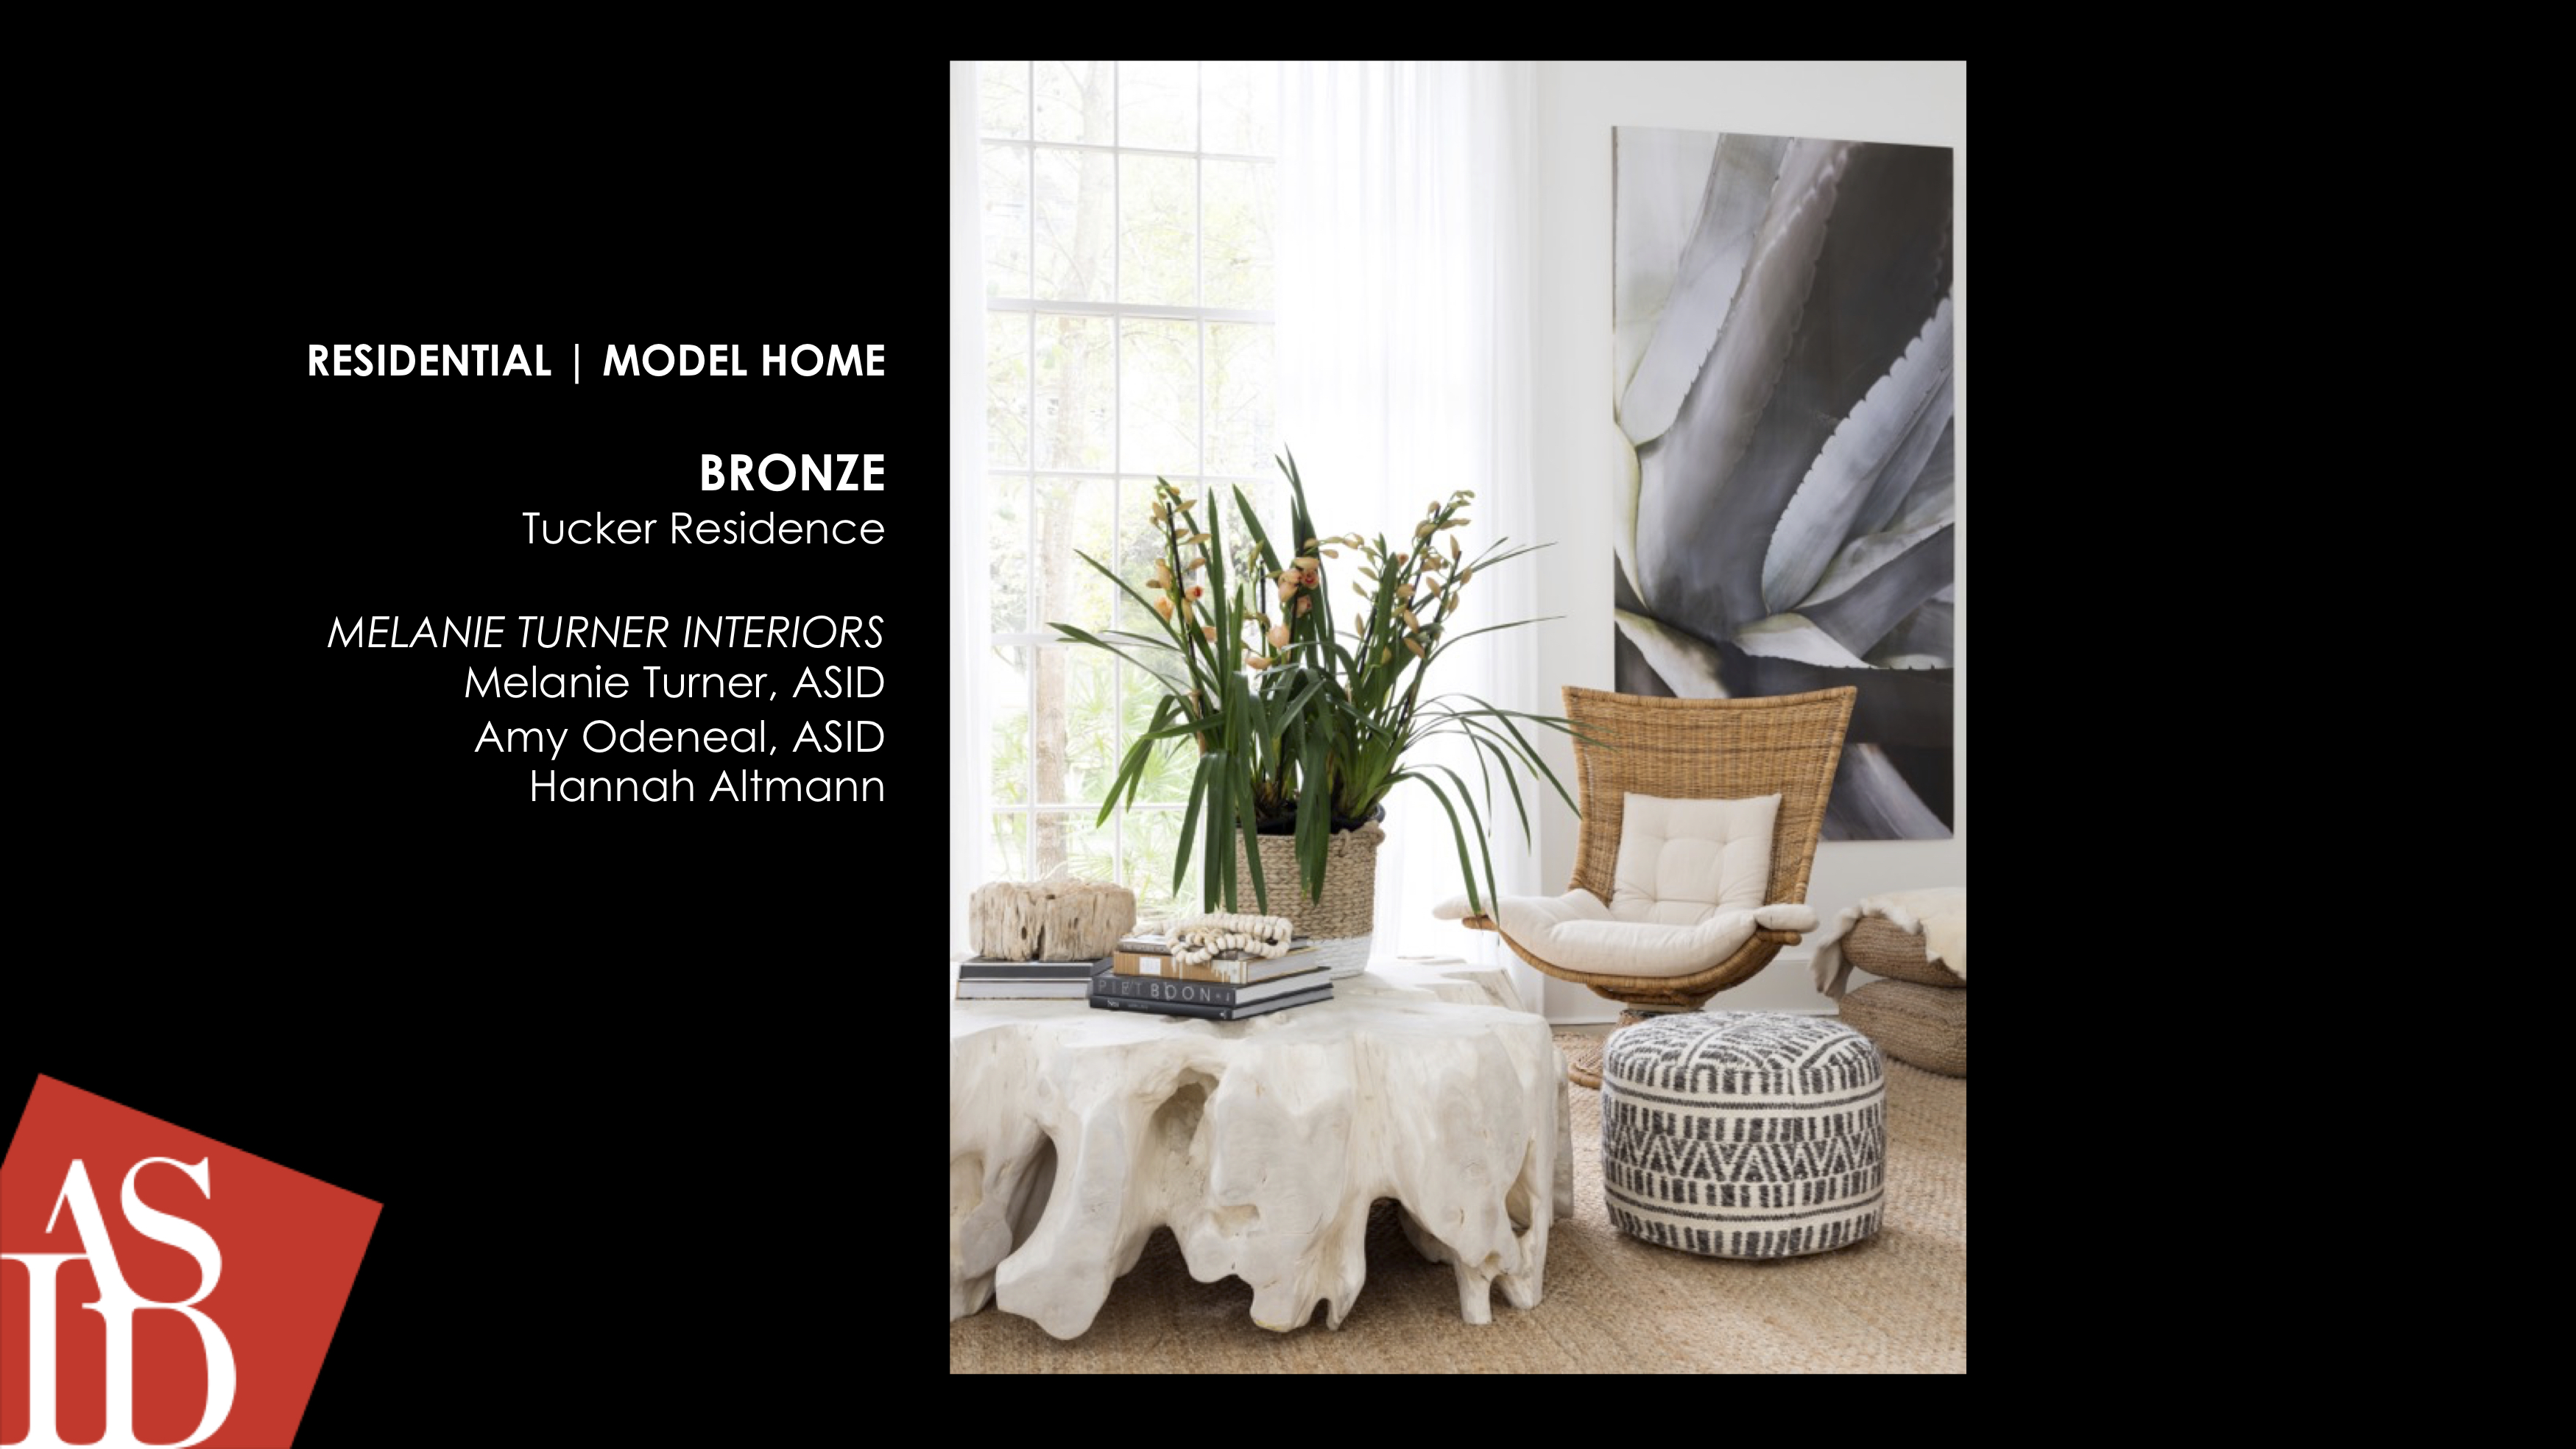 MODEL HOME | BRONZE